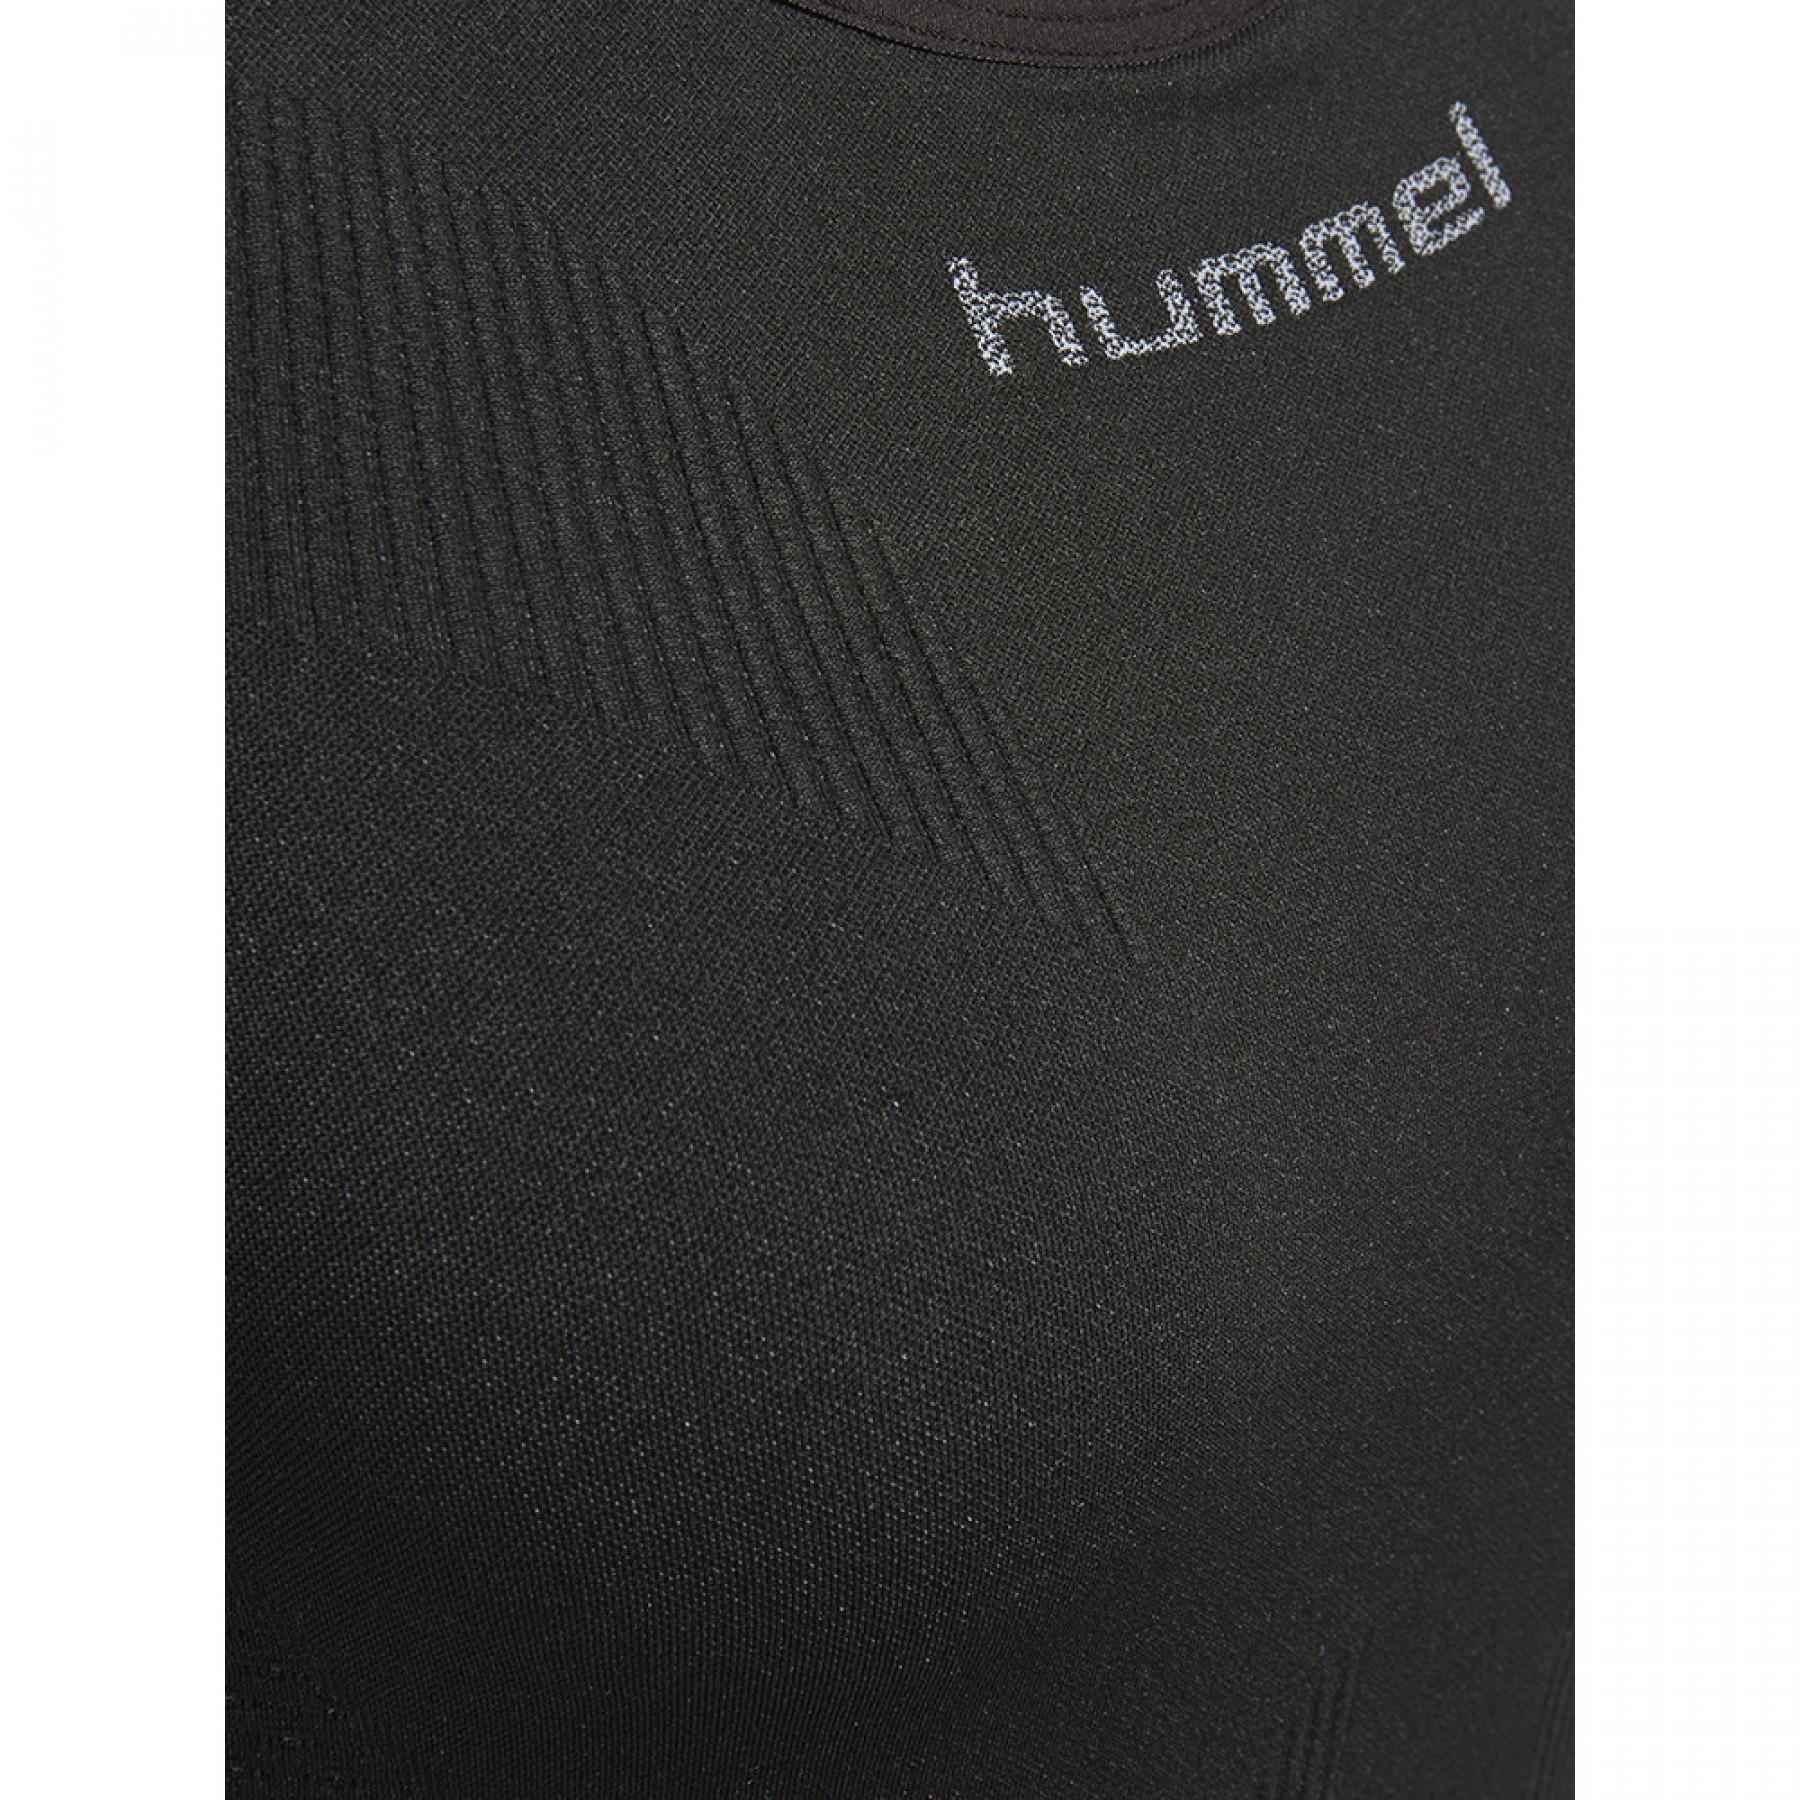 Débardeur femme Hummel first comfort hmlPRO